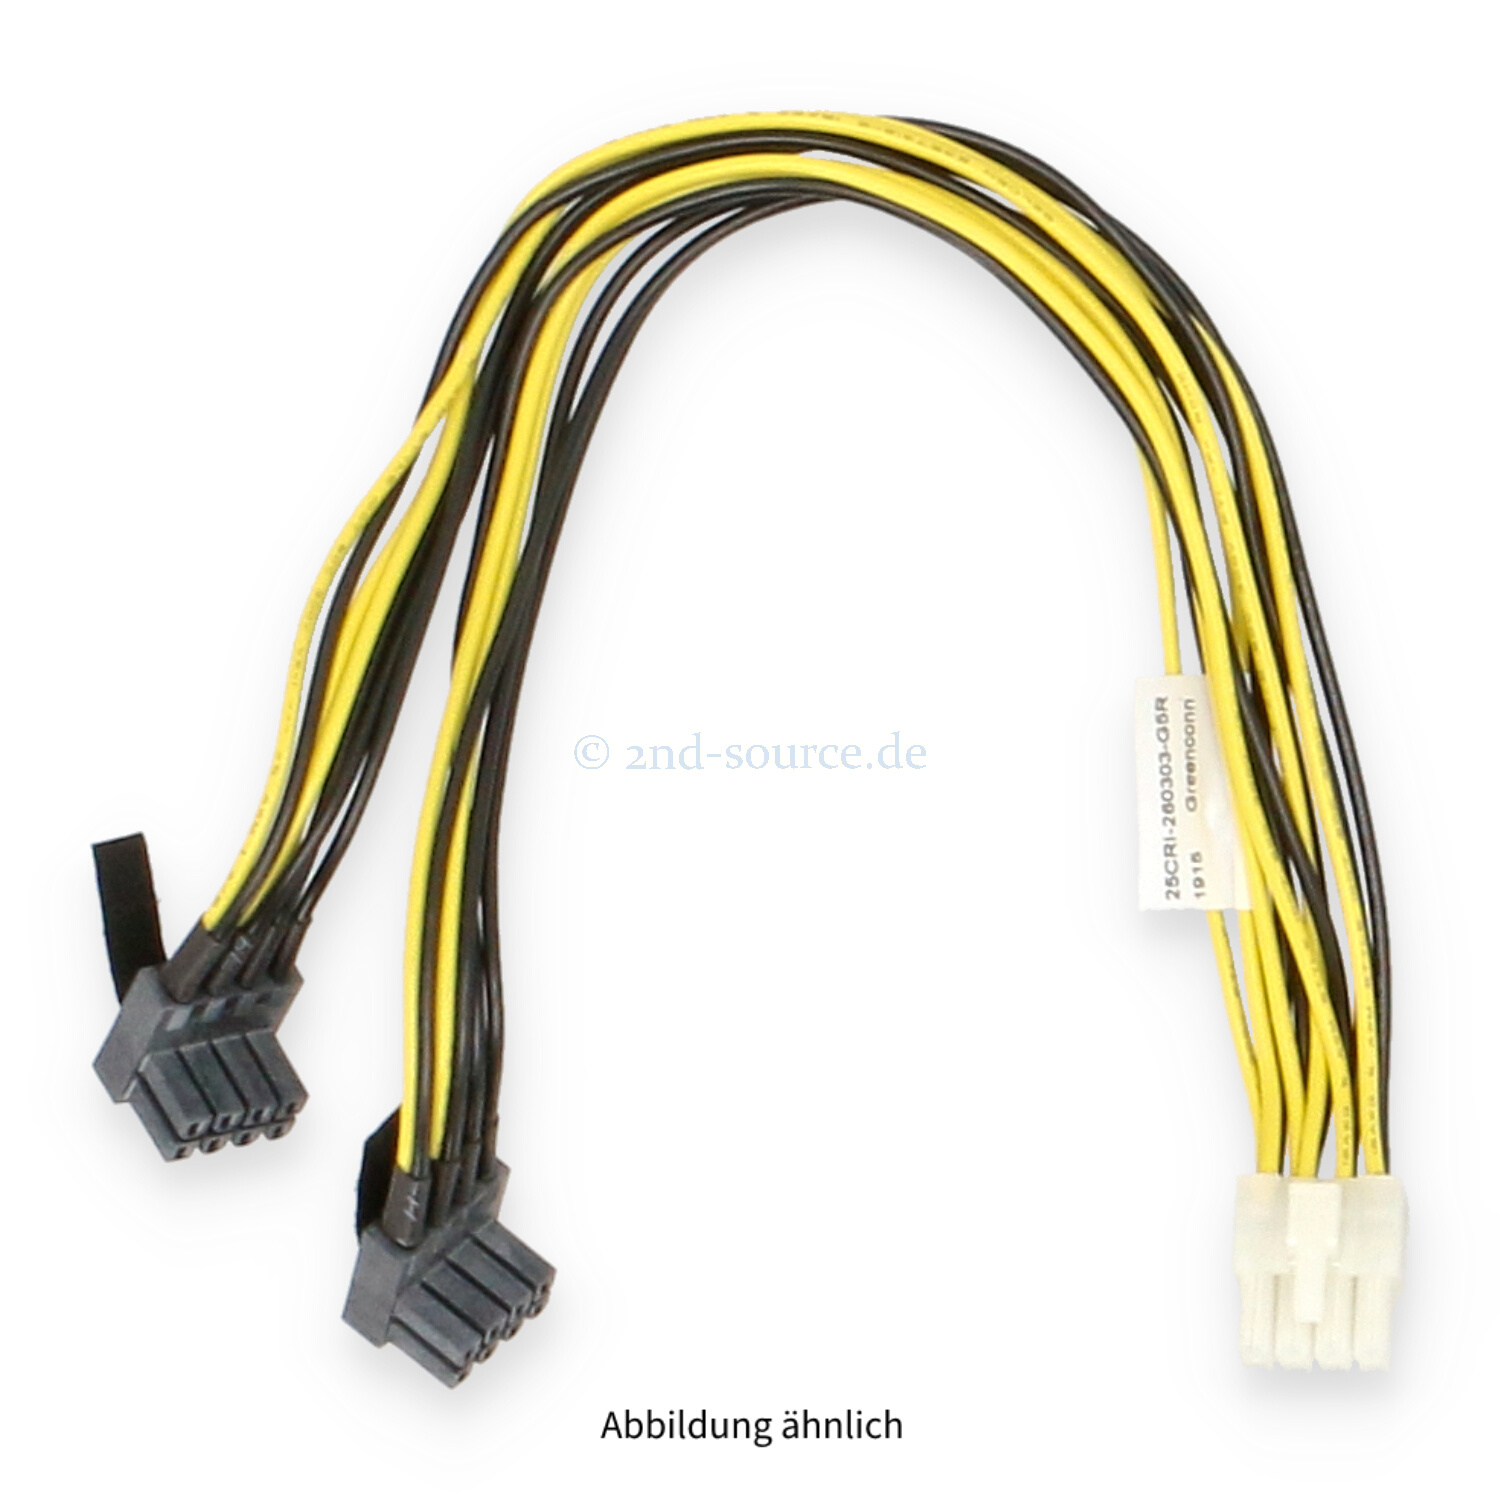 Gigabyte 0.30m 8-pin to 2x 8-pin GPU Cable G291-281 25CRI-260303-G5R